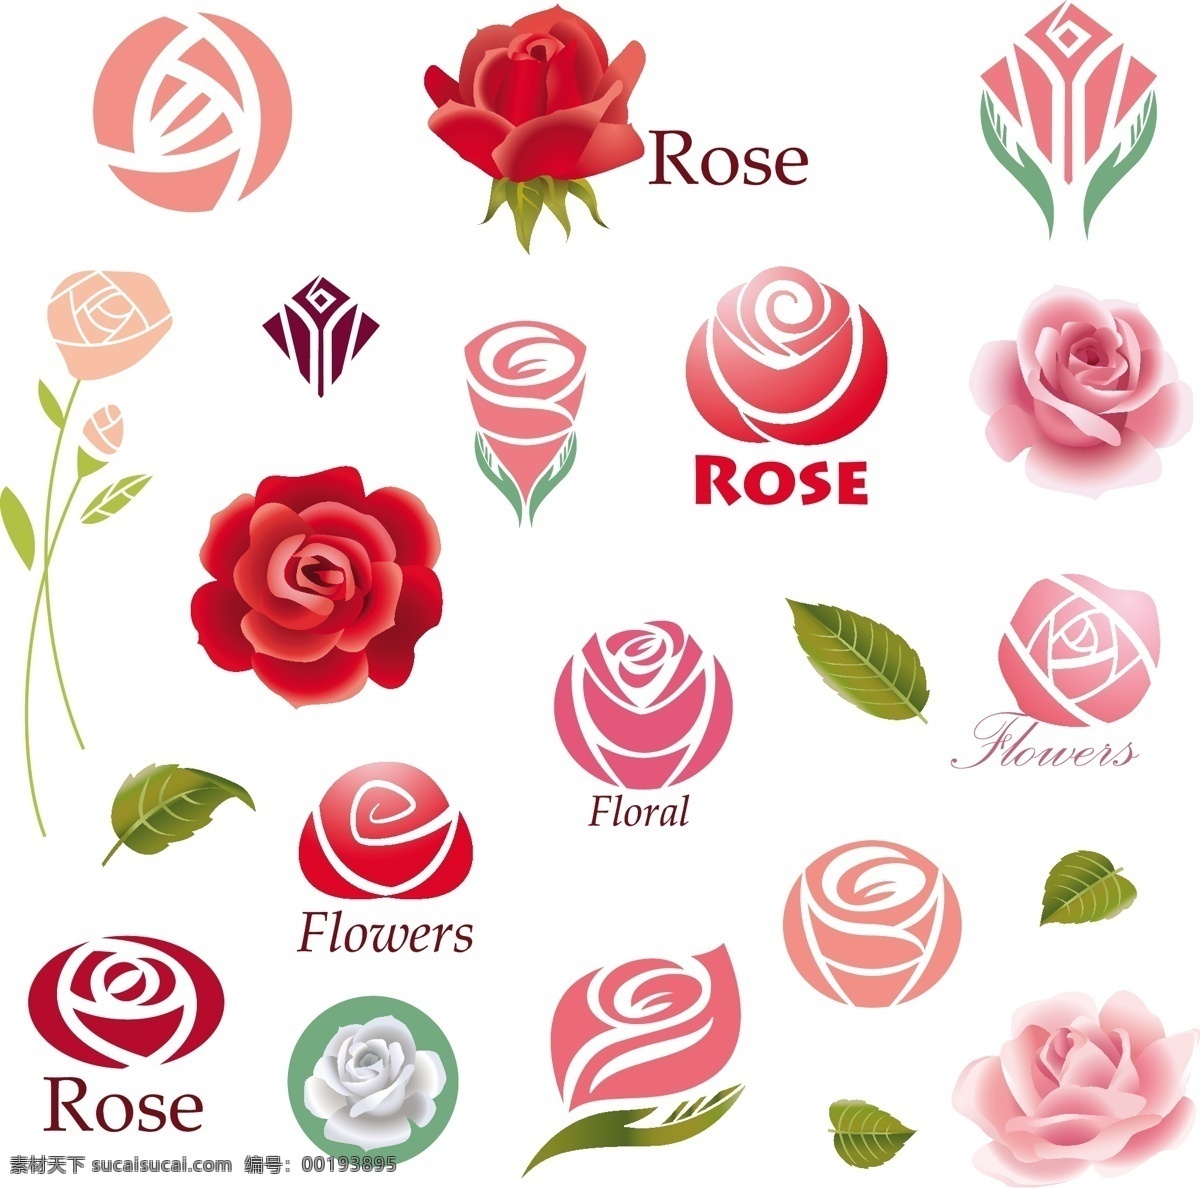 玫瑰花 主题 图标 矢量 logo设计 标志设计 花卉图标 格式 矢量图 花纹花边